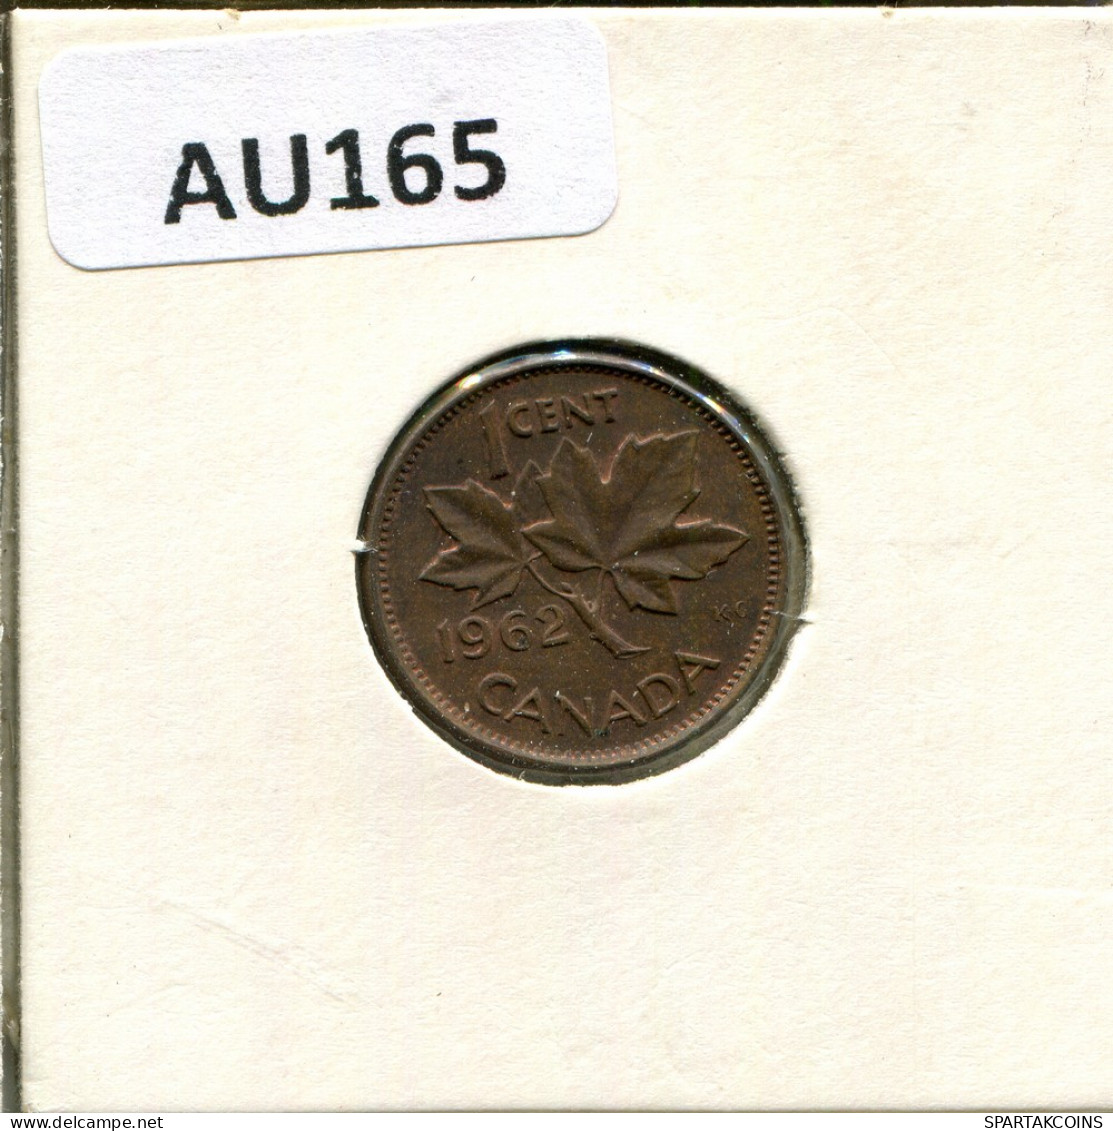 1 CENT 1962 CANADA Coin #AU165.U - Canada